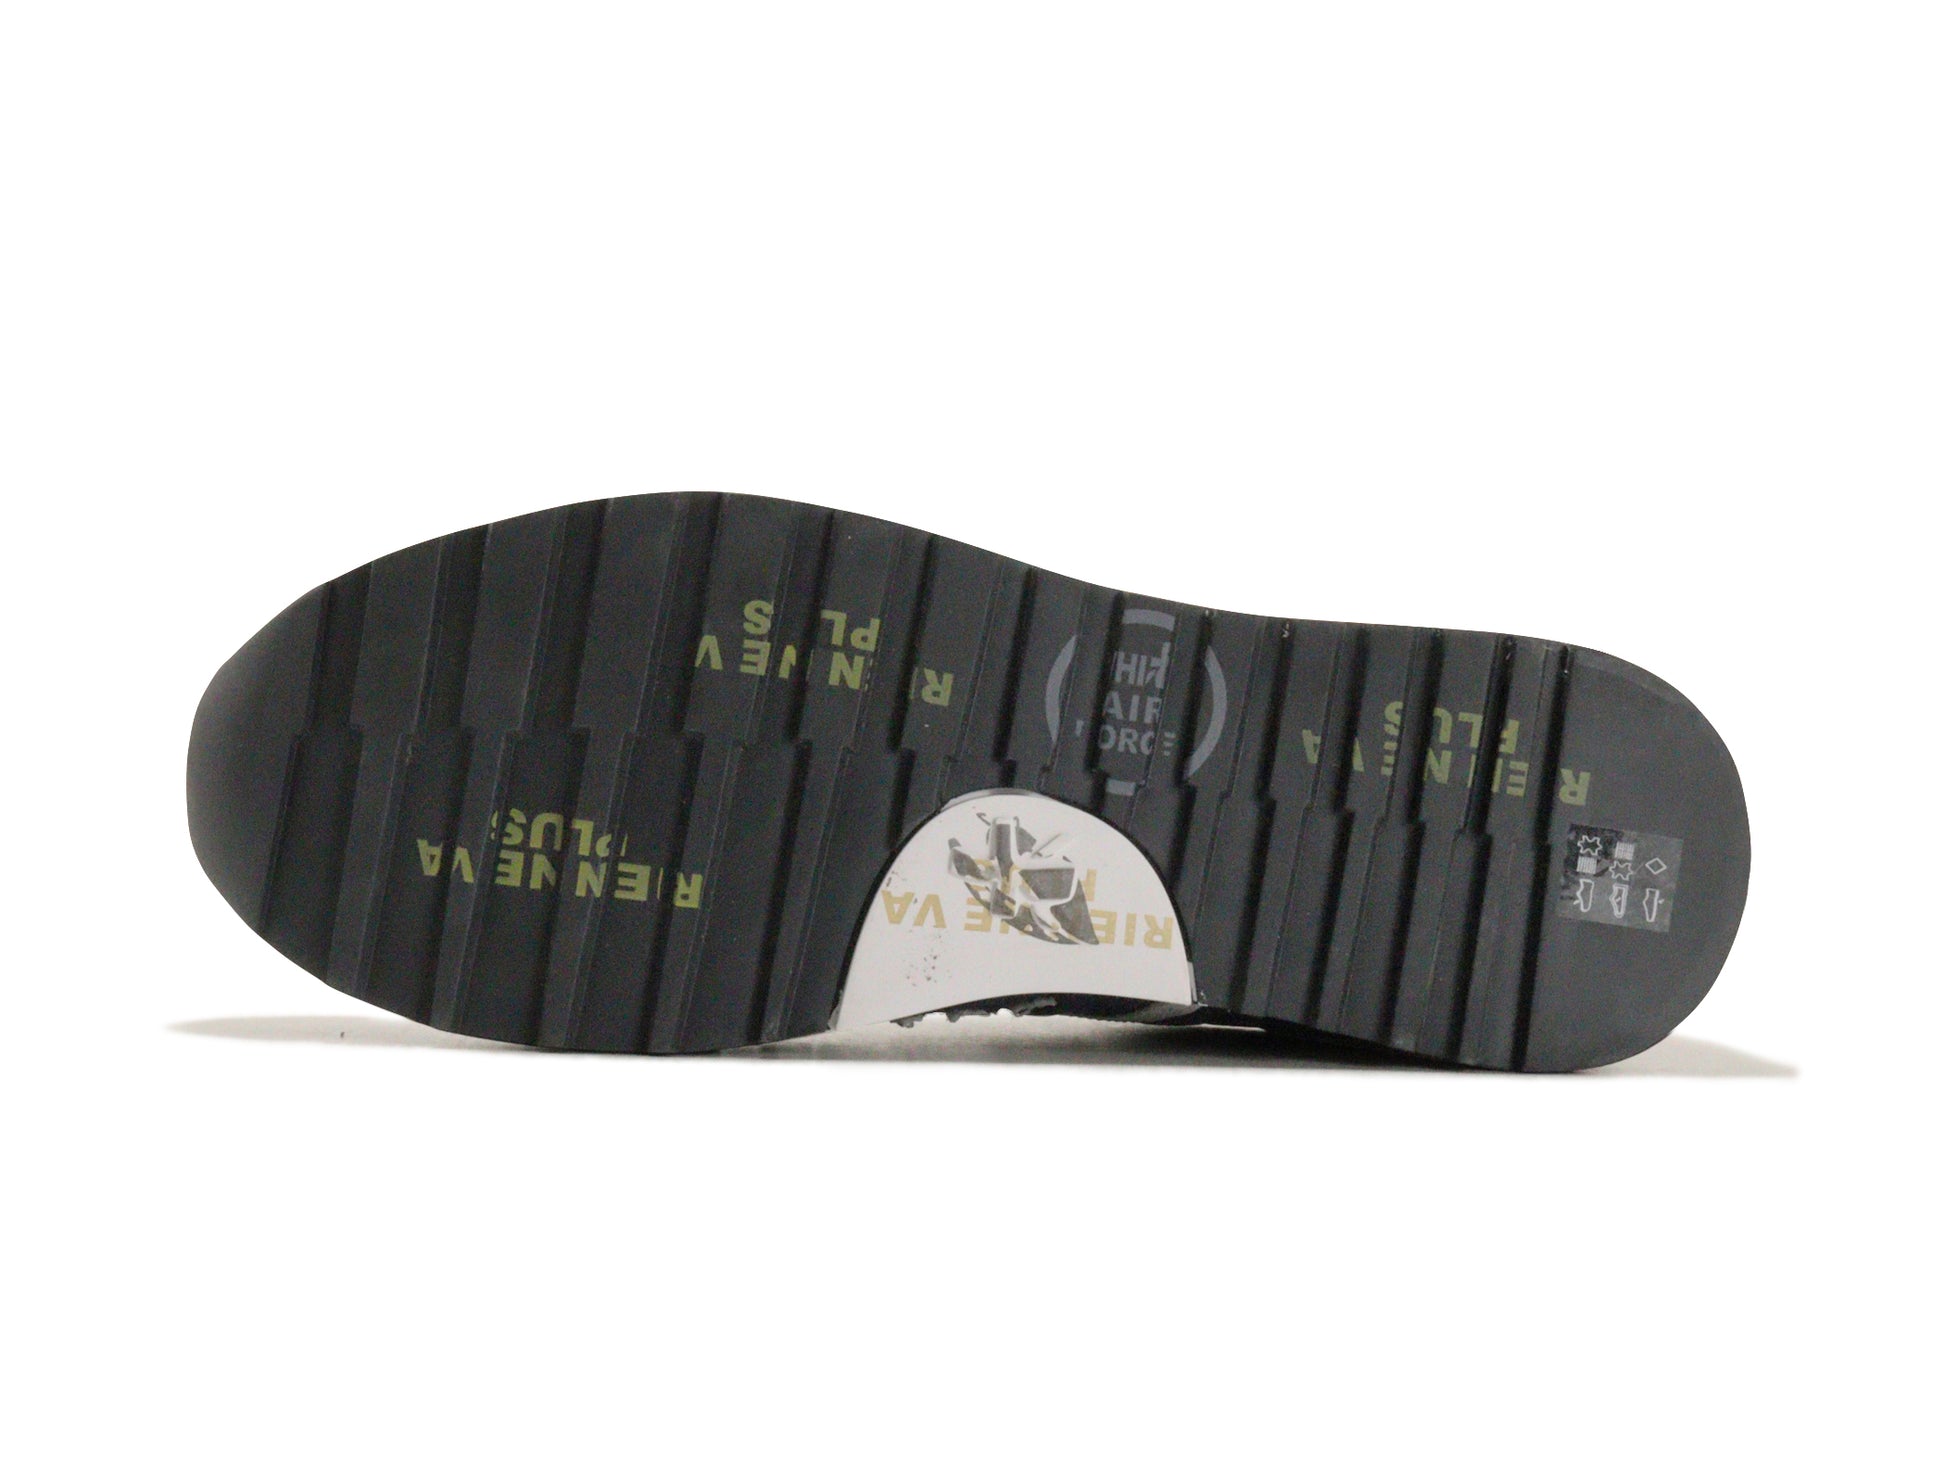 PREMIATAのスニーカー「600e」の靴底の商品画像